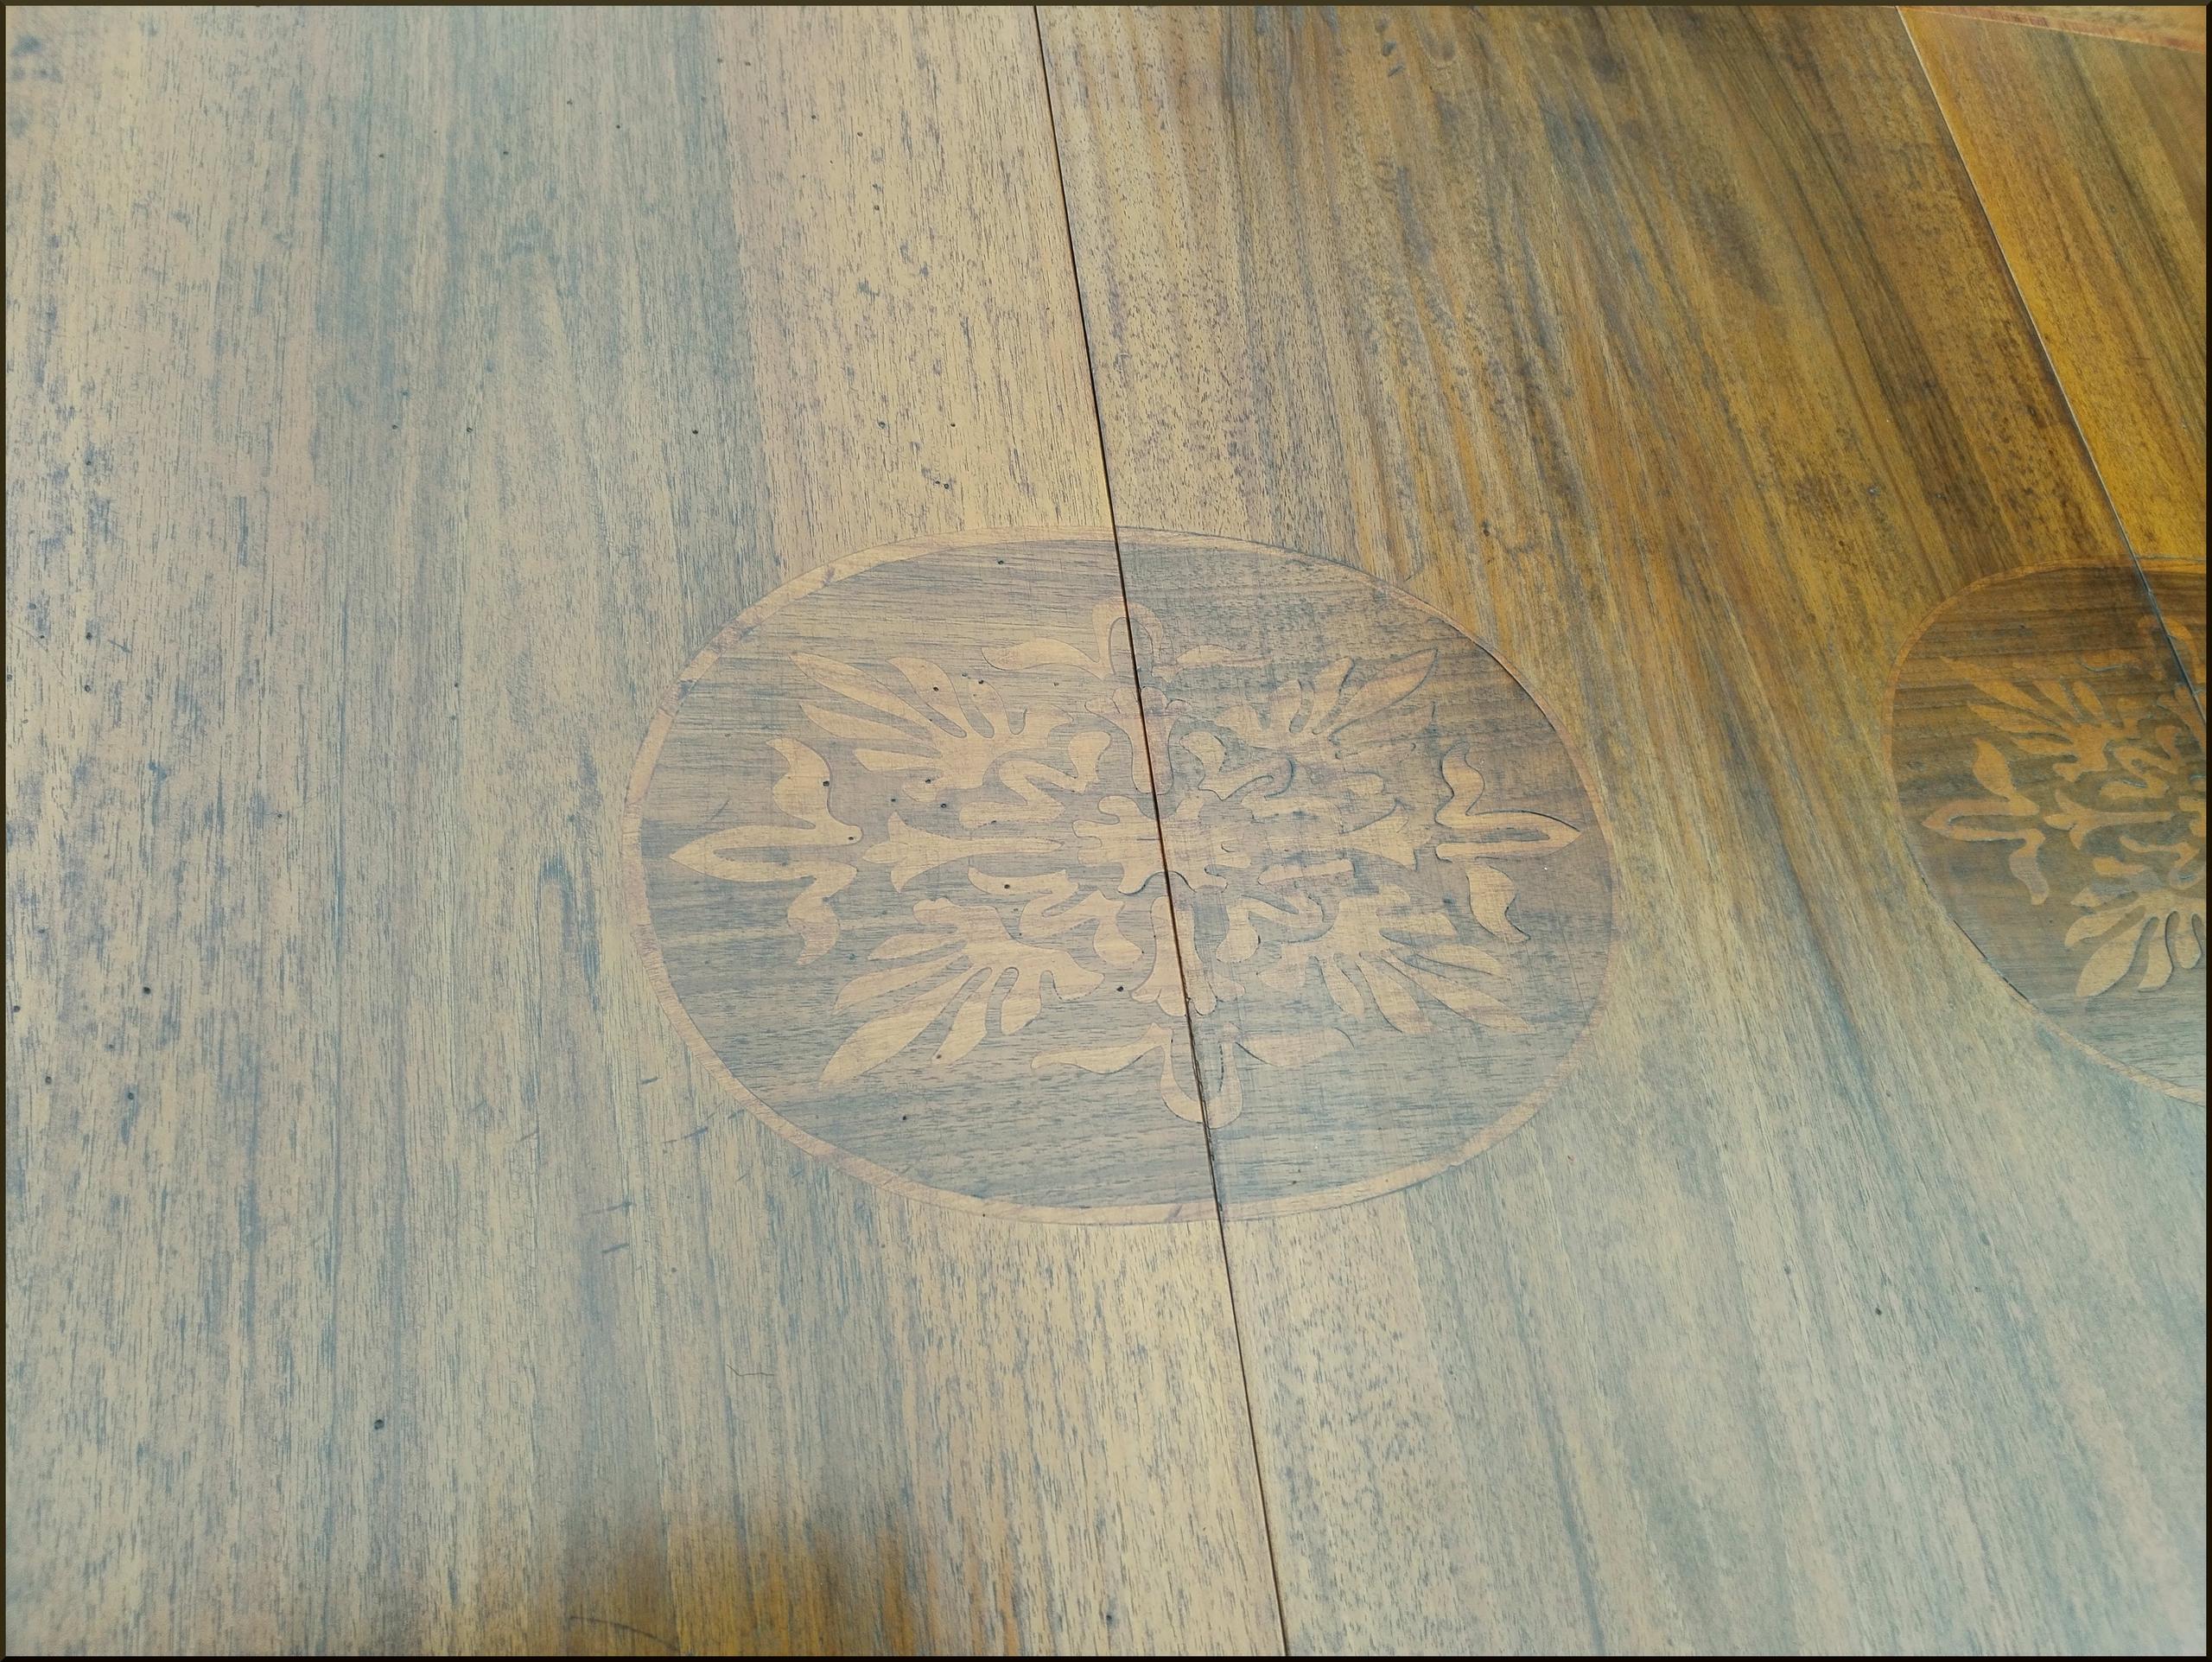 Tavolo ovale allungabile con prolunghe intarsiate e gamba impero scanalata